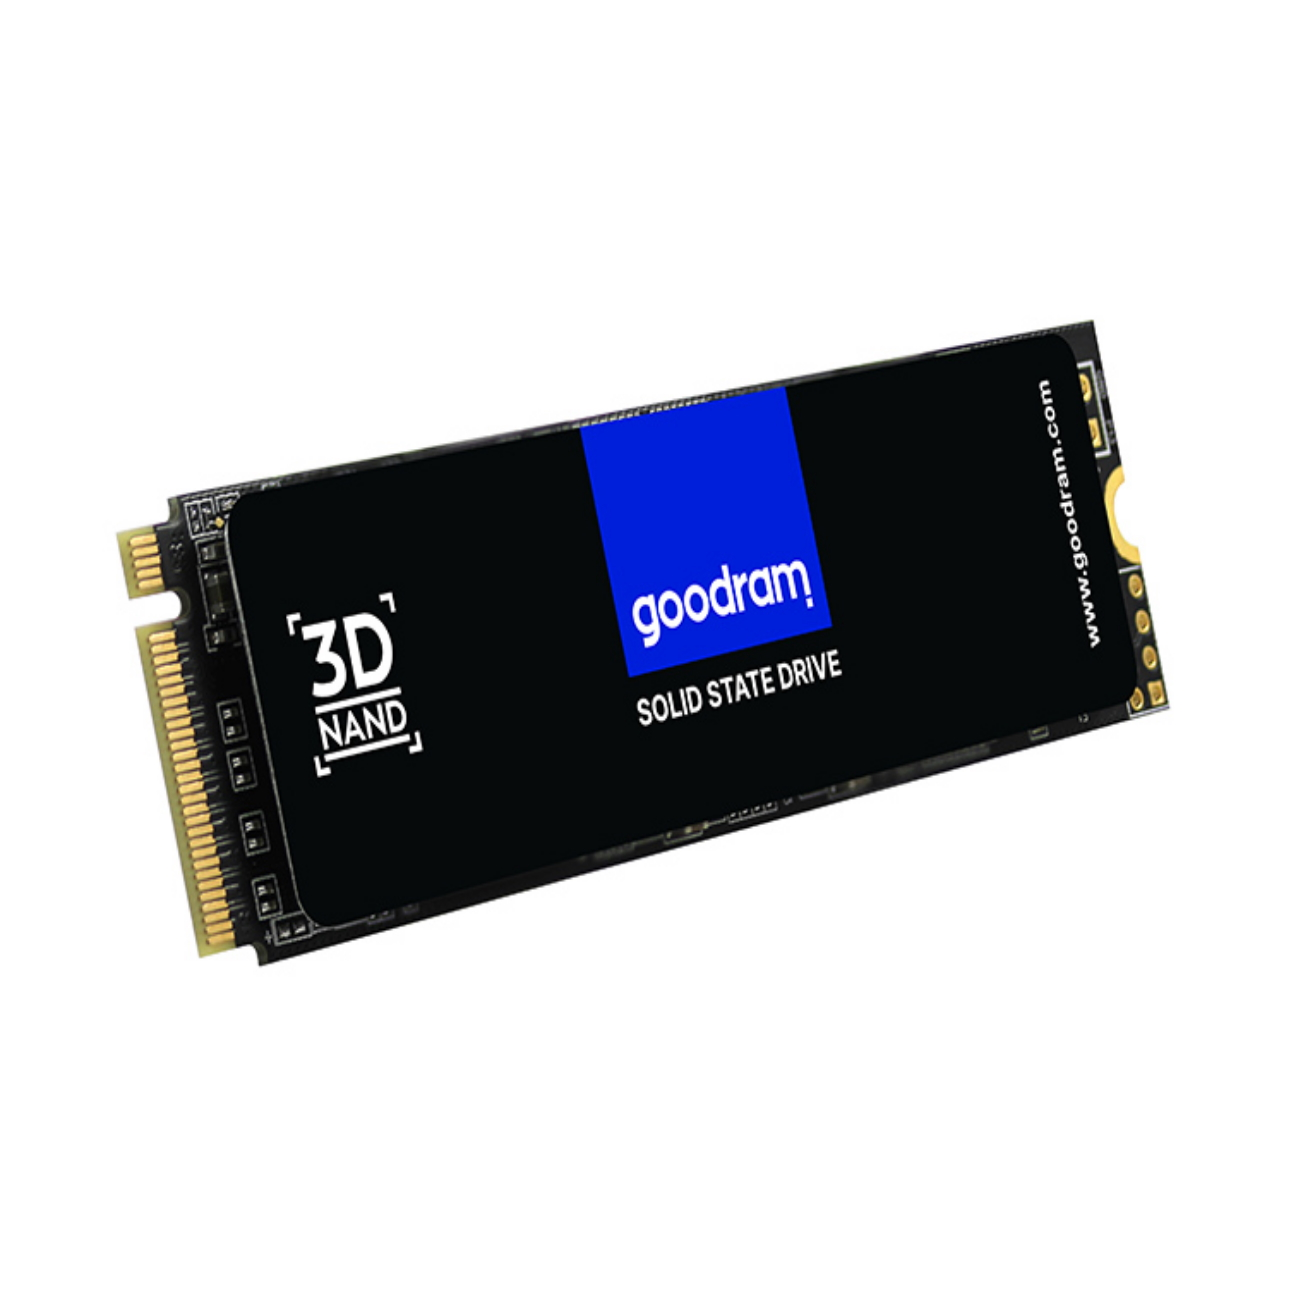 GOOD RAM 1TB SSD PX500 2280 RETAIL, 1000 GB, 3x4 intern mSSD, M.2 PCIe